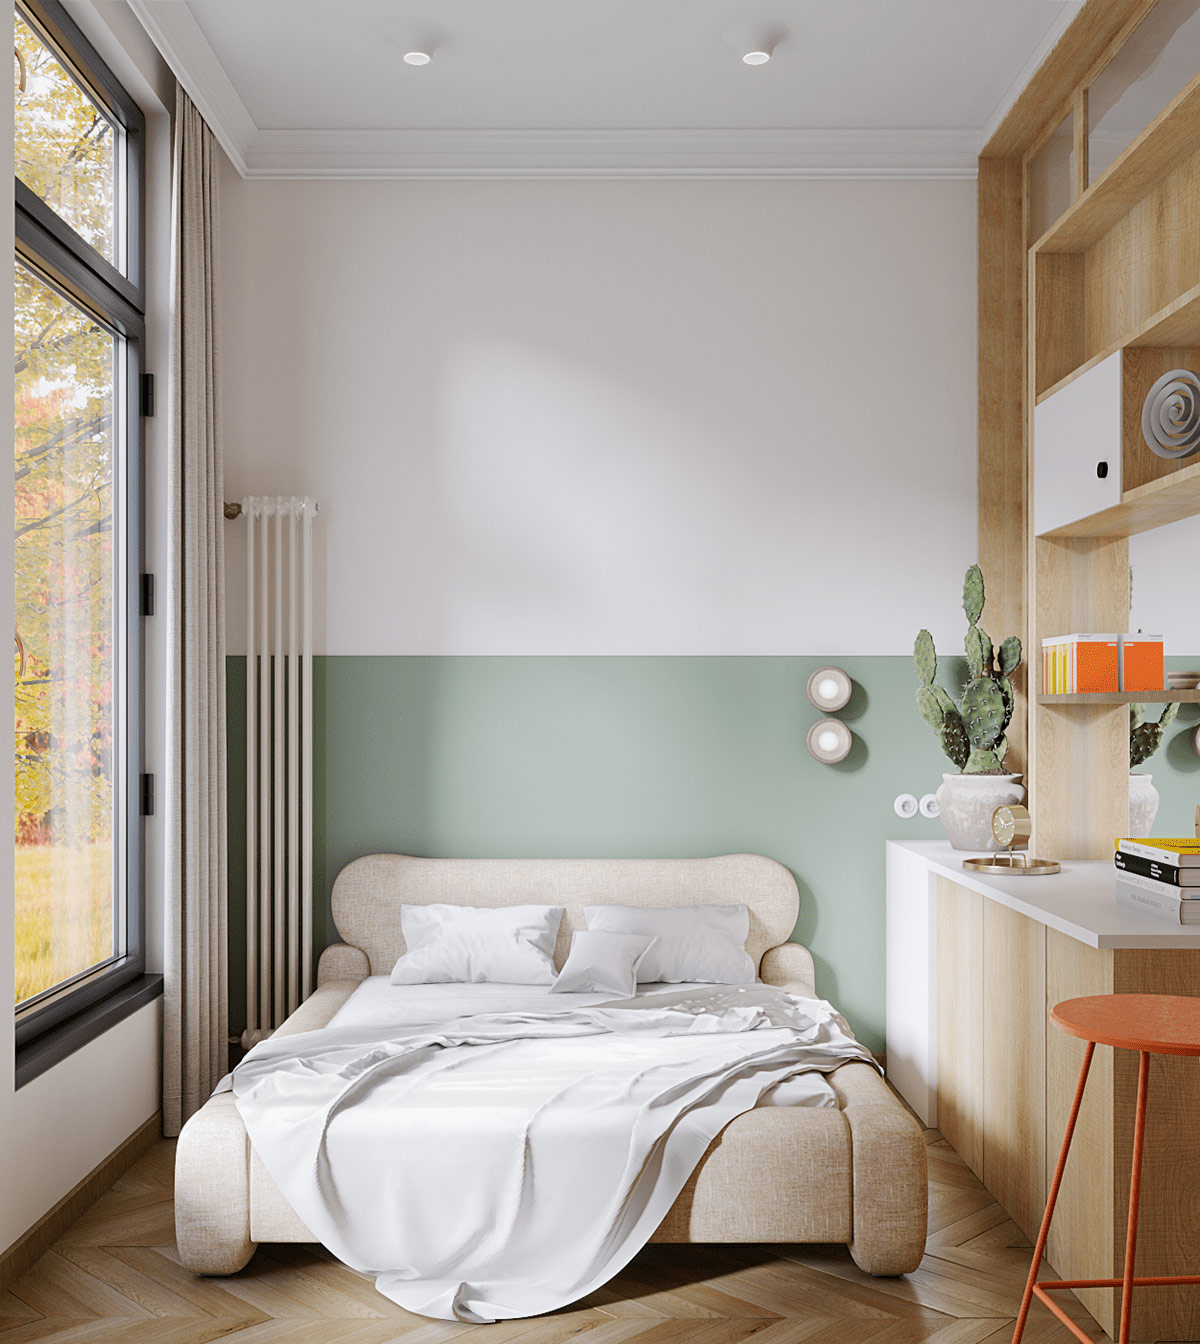 Tại phòng ngủ, chiếc giường đôi xinh xắn êm ái với phong cách trang trí sơn tường một nửa.